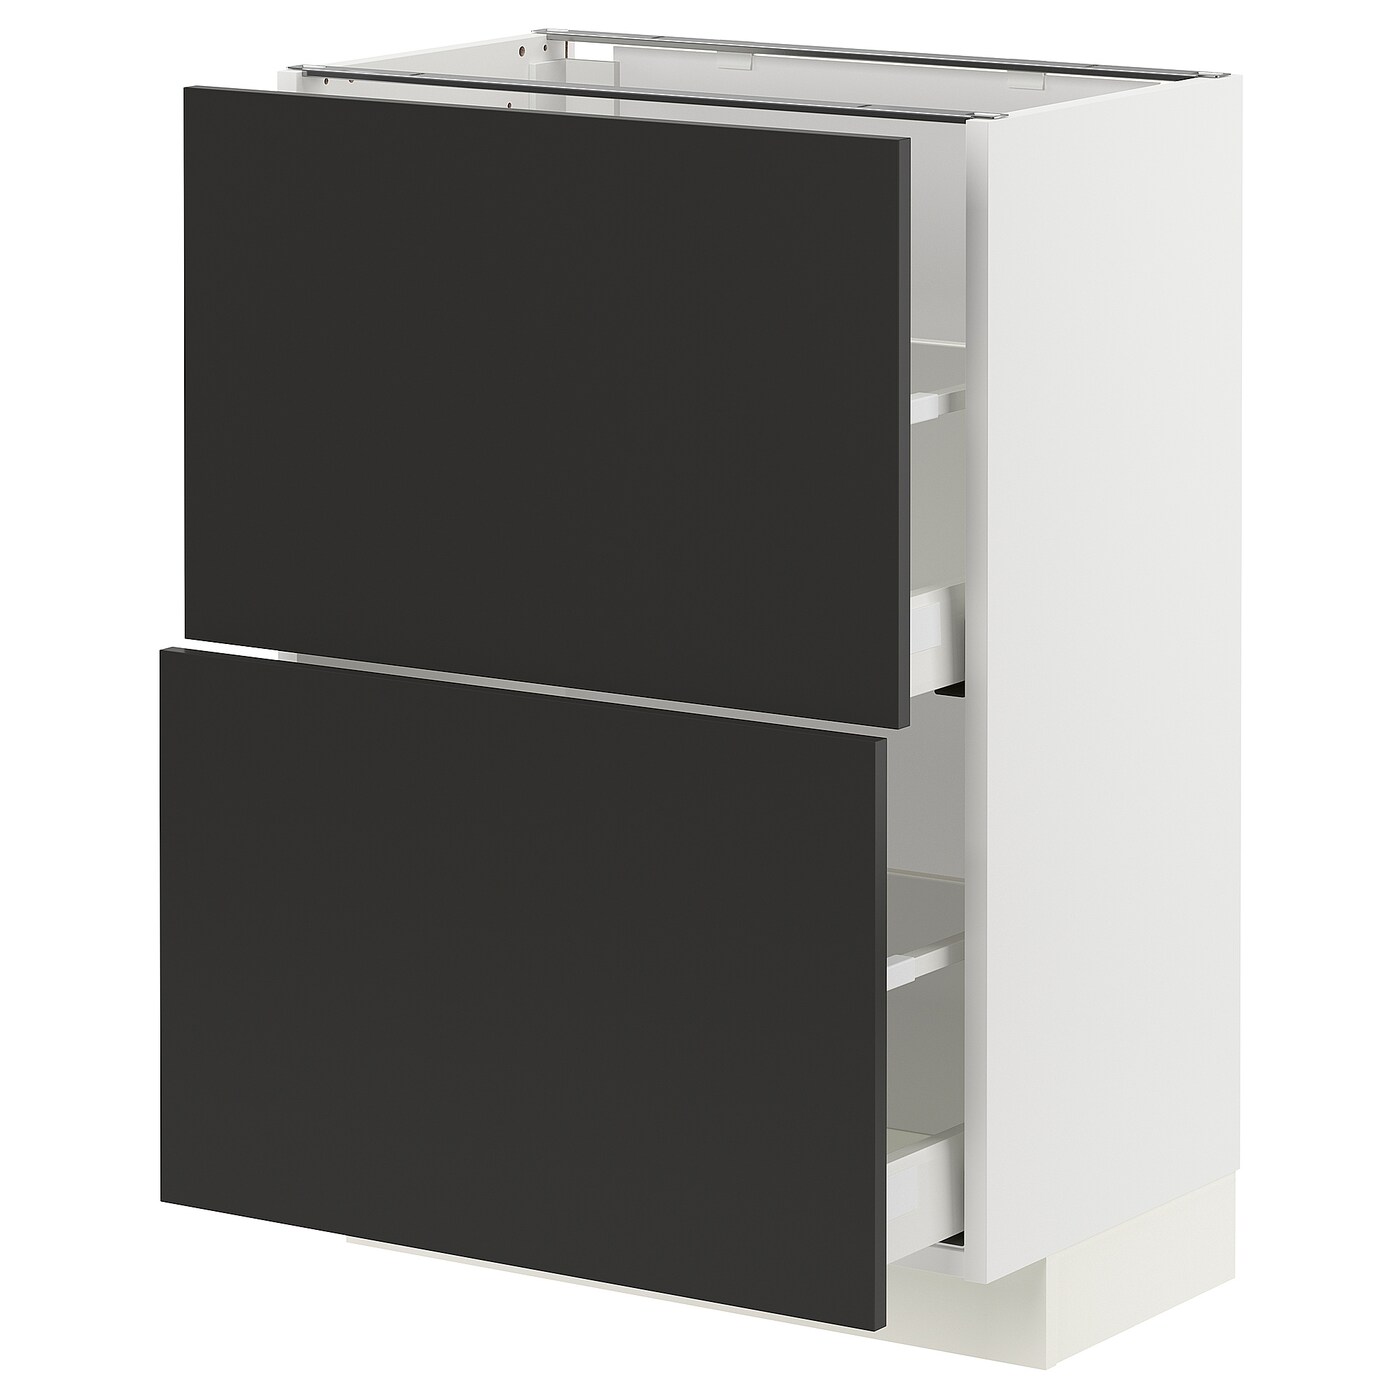 Напольный кухонный шкаф - IKEA METOD MAXIMERA, 88x39x60см, белый/черный, МЕТОД МАКСИМЕРА ИКЕА